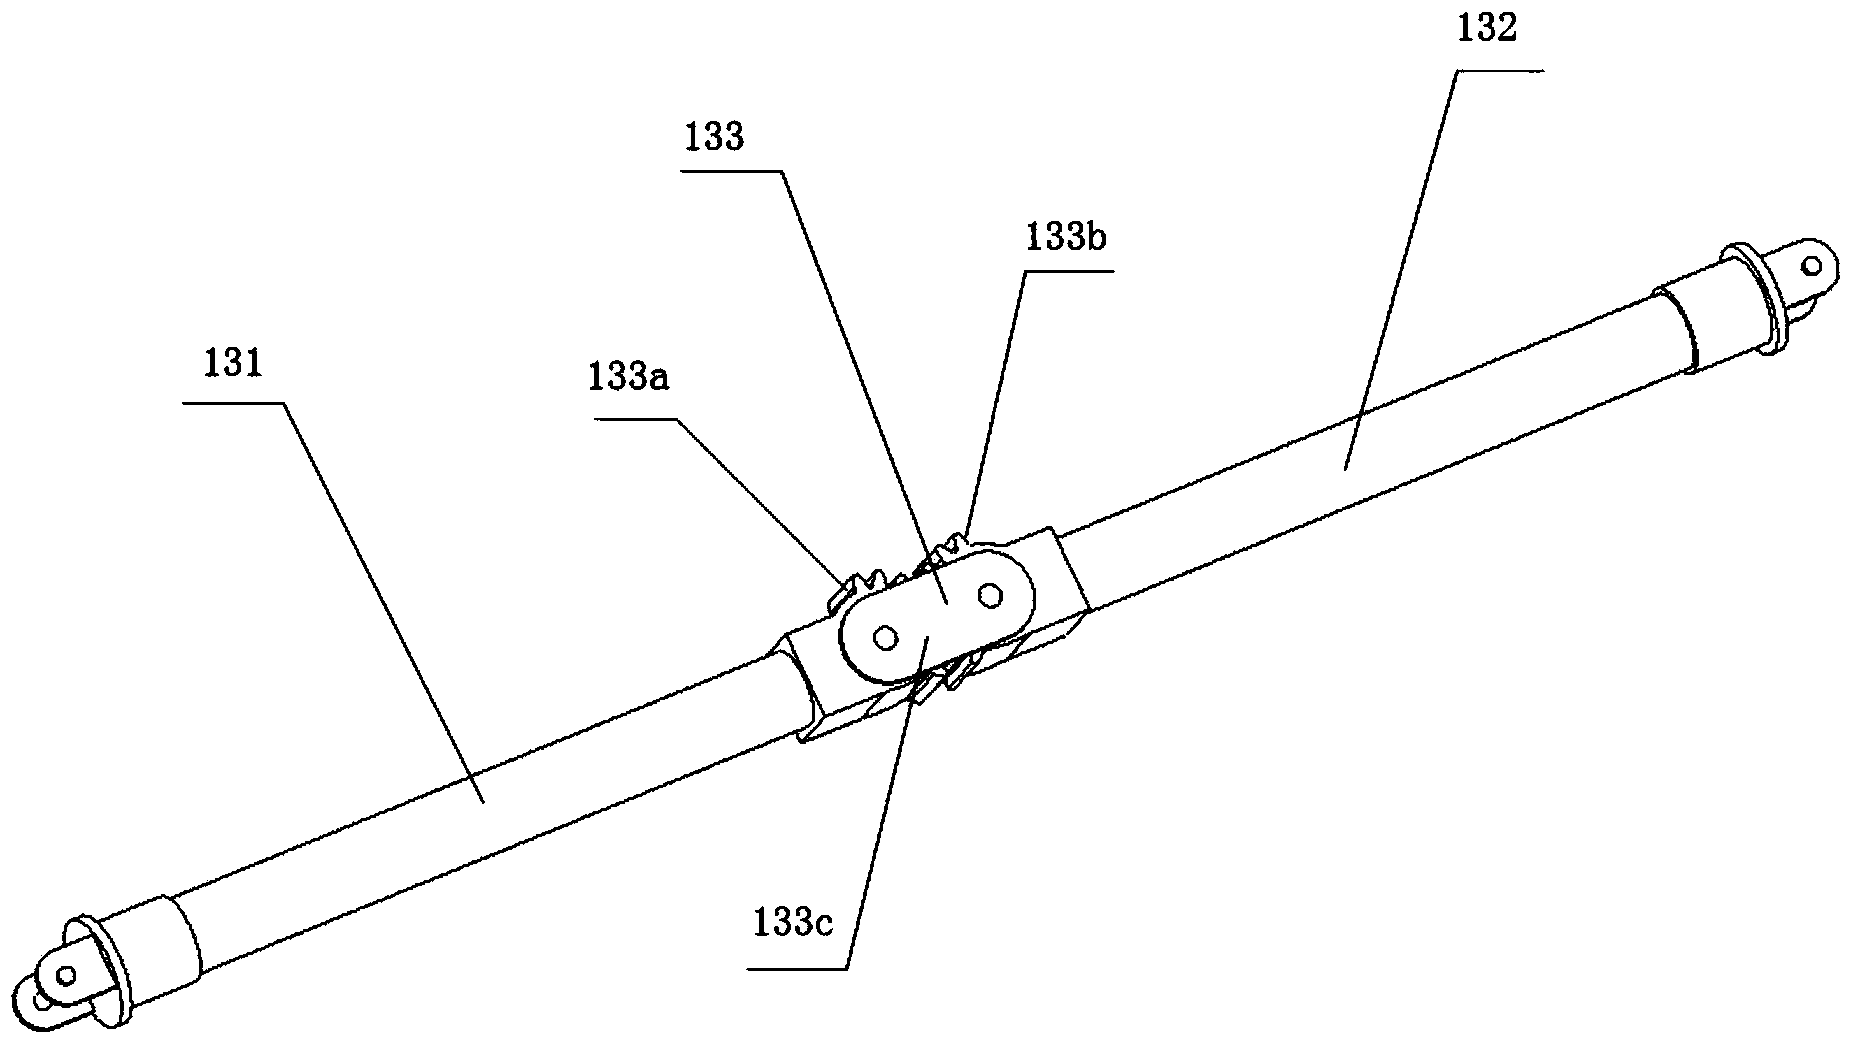 Expandable mesh parabolic cylinder antenna